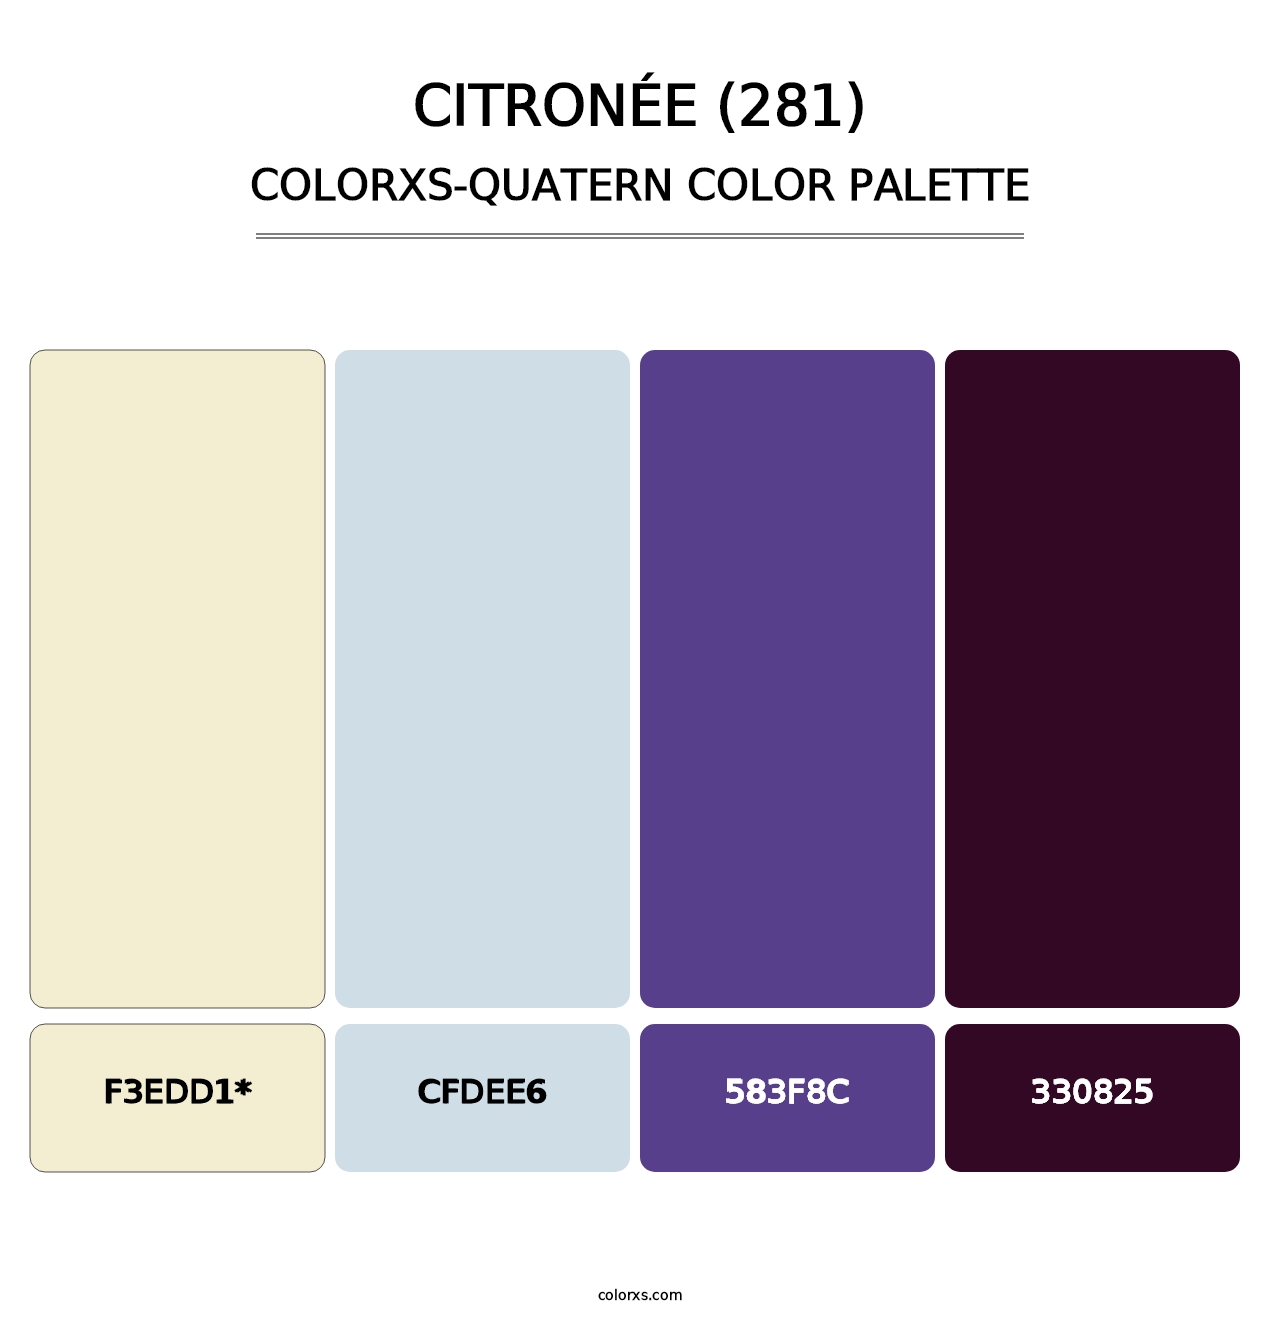 Citronée (281) - Colorxs Quatern Palette